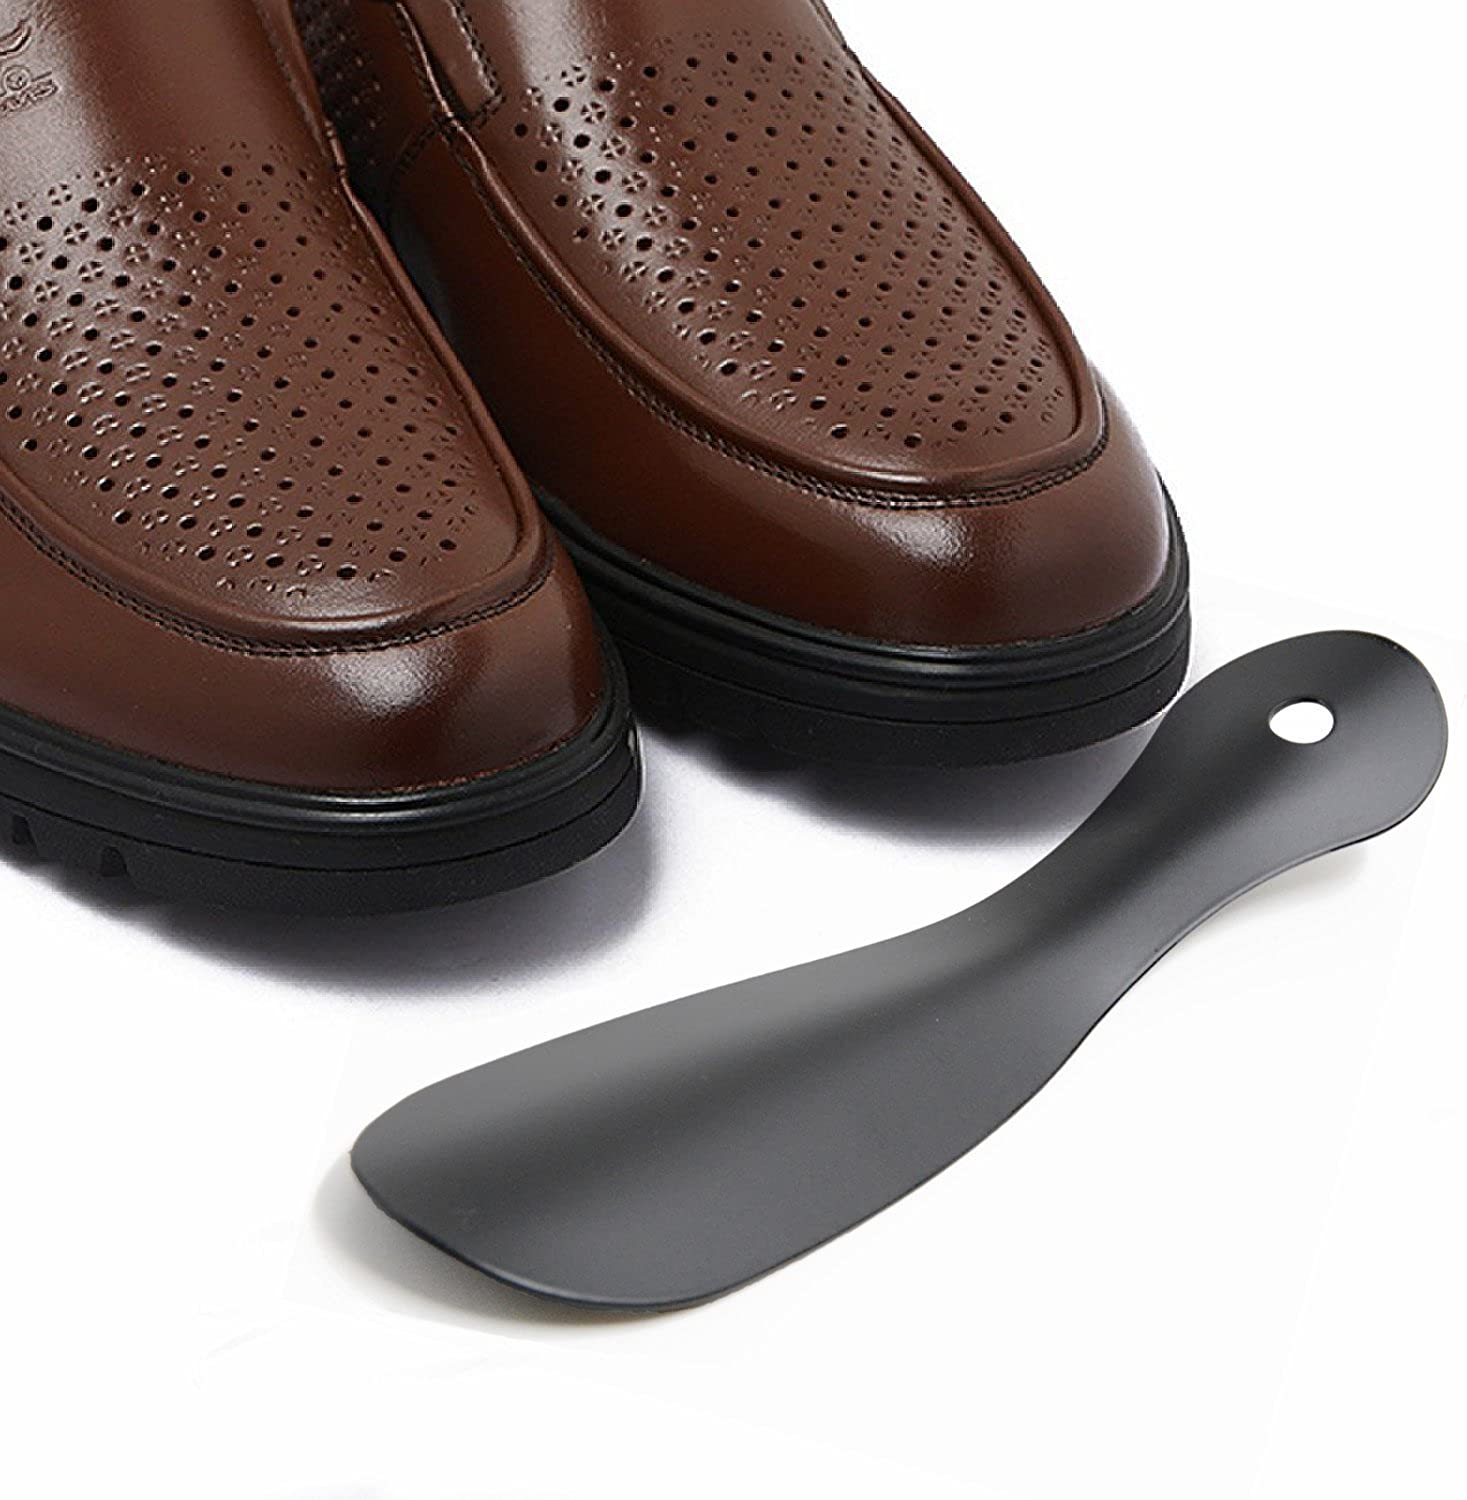 chaussé pied acier inoxydable avec lanière en cuir Noir Accessoire Gentleman Classique ARTKIVA parfait pour le voyage 2 Pcs Chausse-pieds Élégant chausse-pied portable- Facile à utiliser 